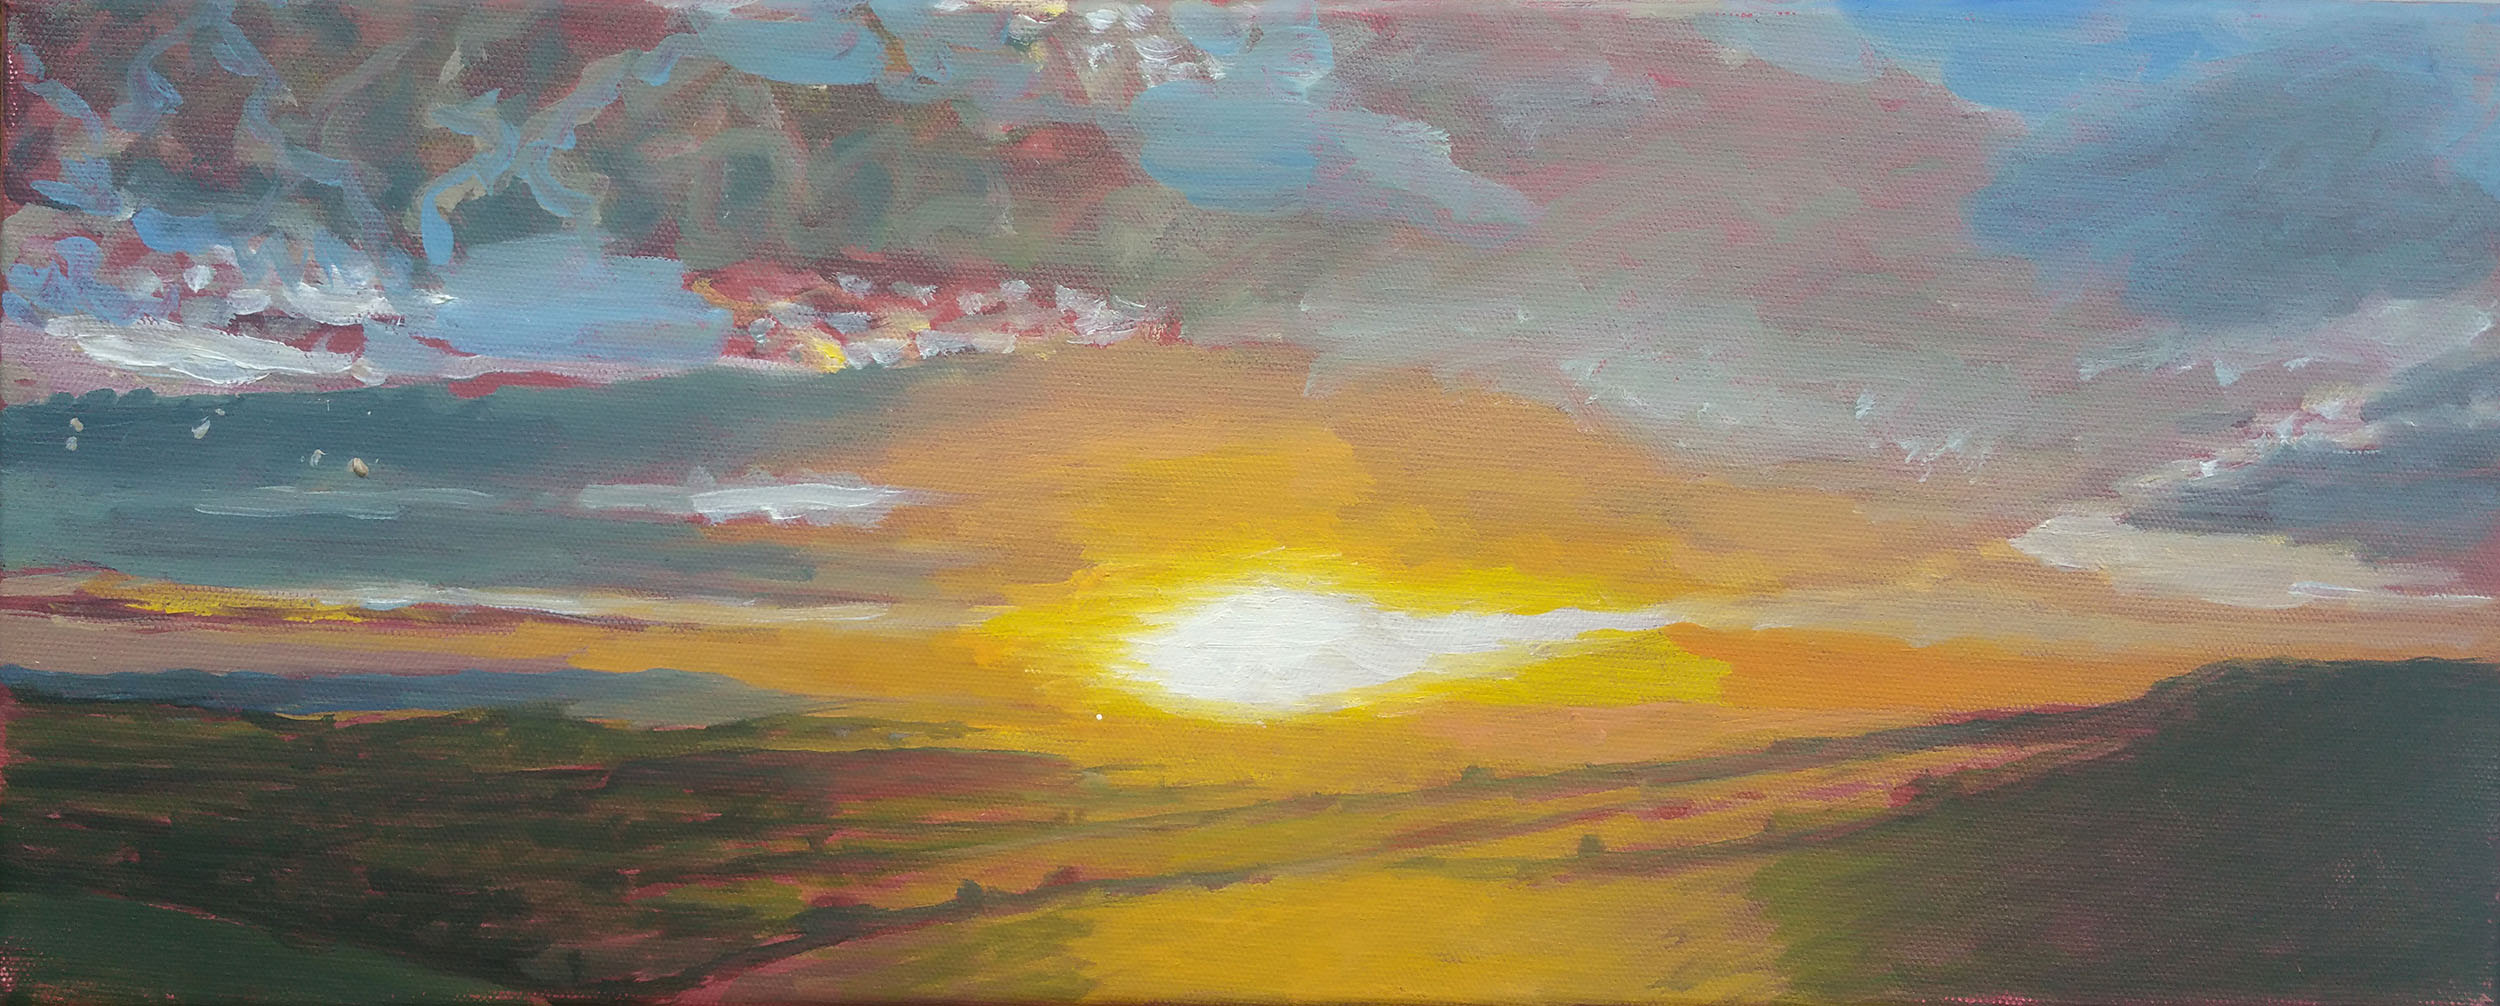 Eggardon Light 20"x8" oil on canvas